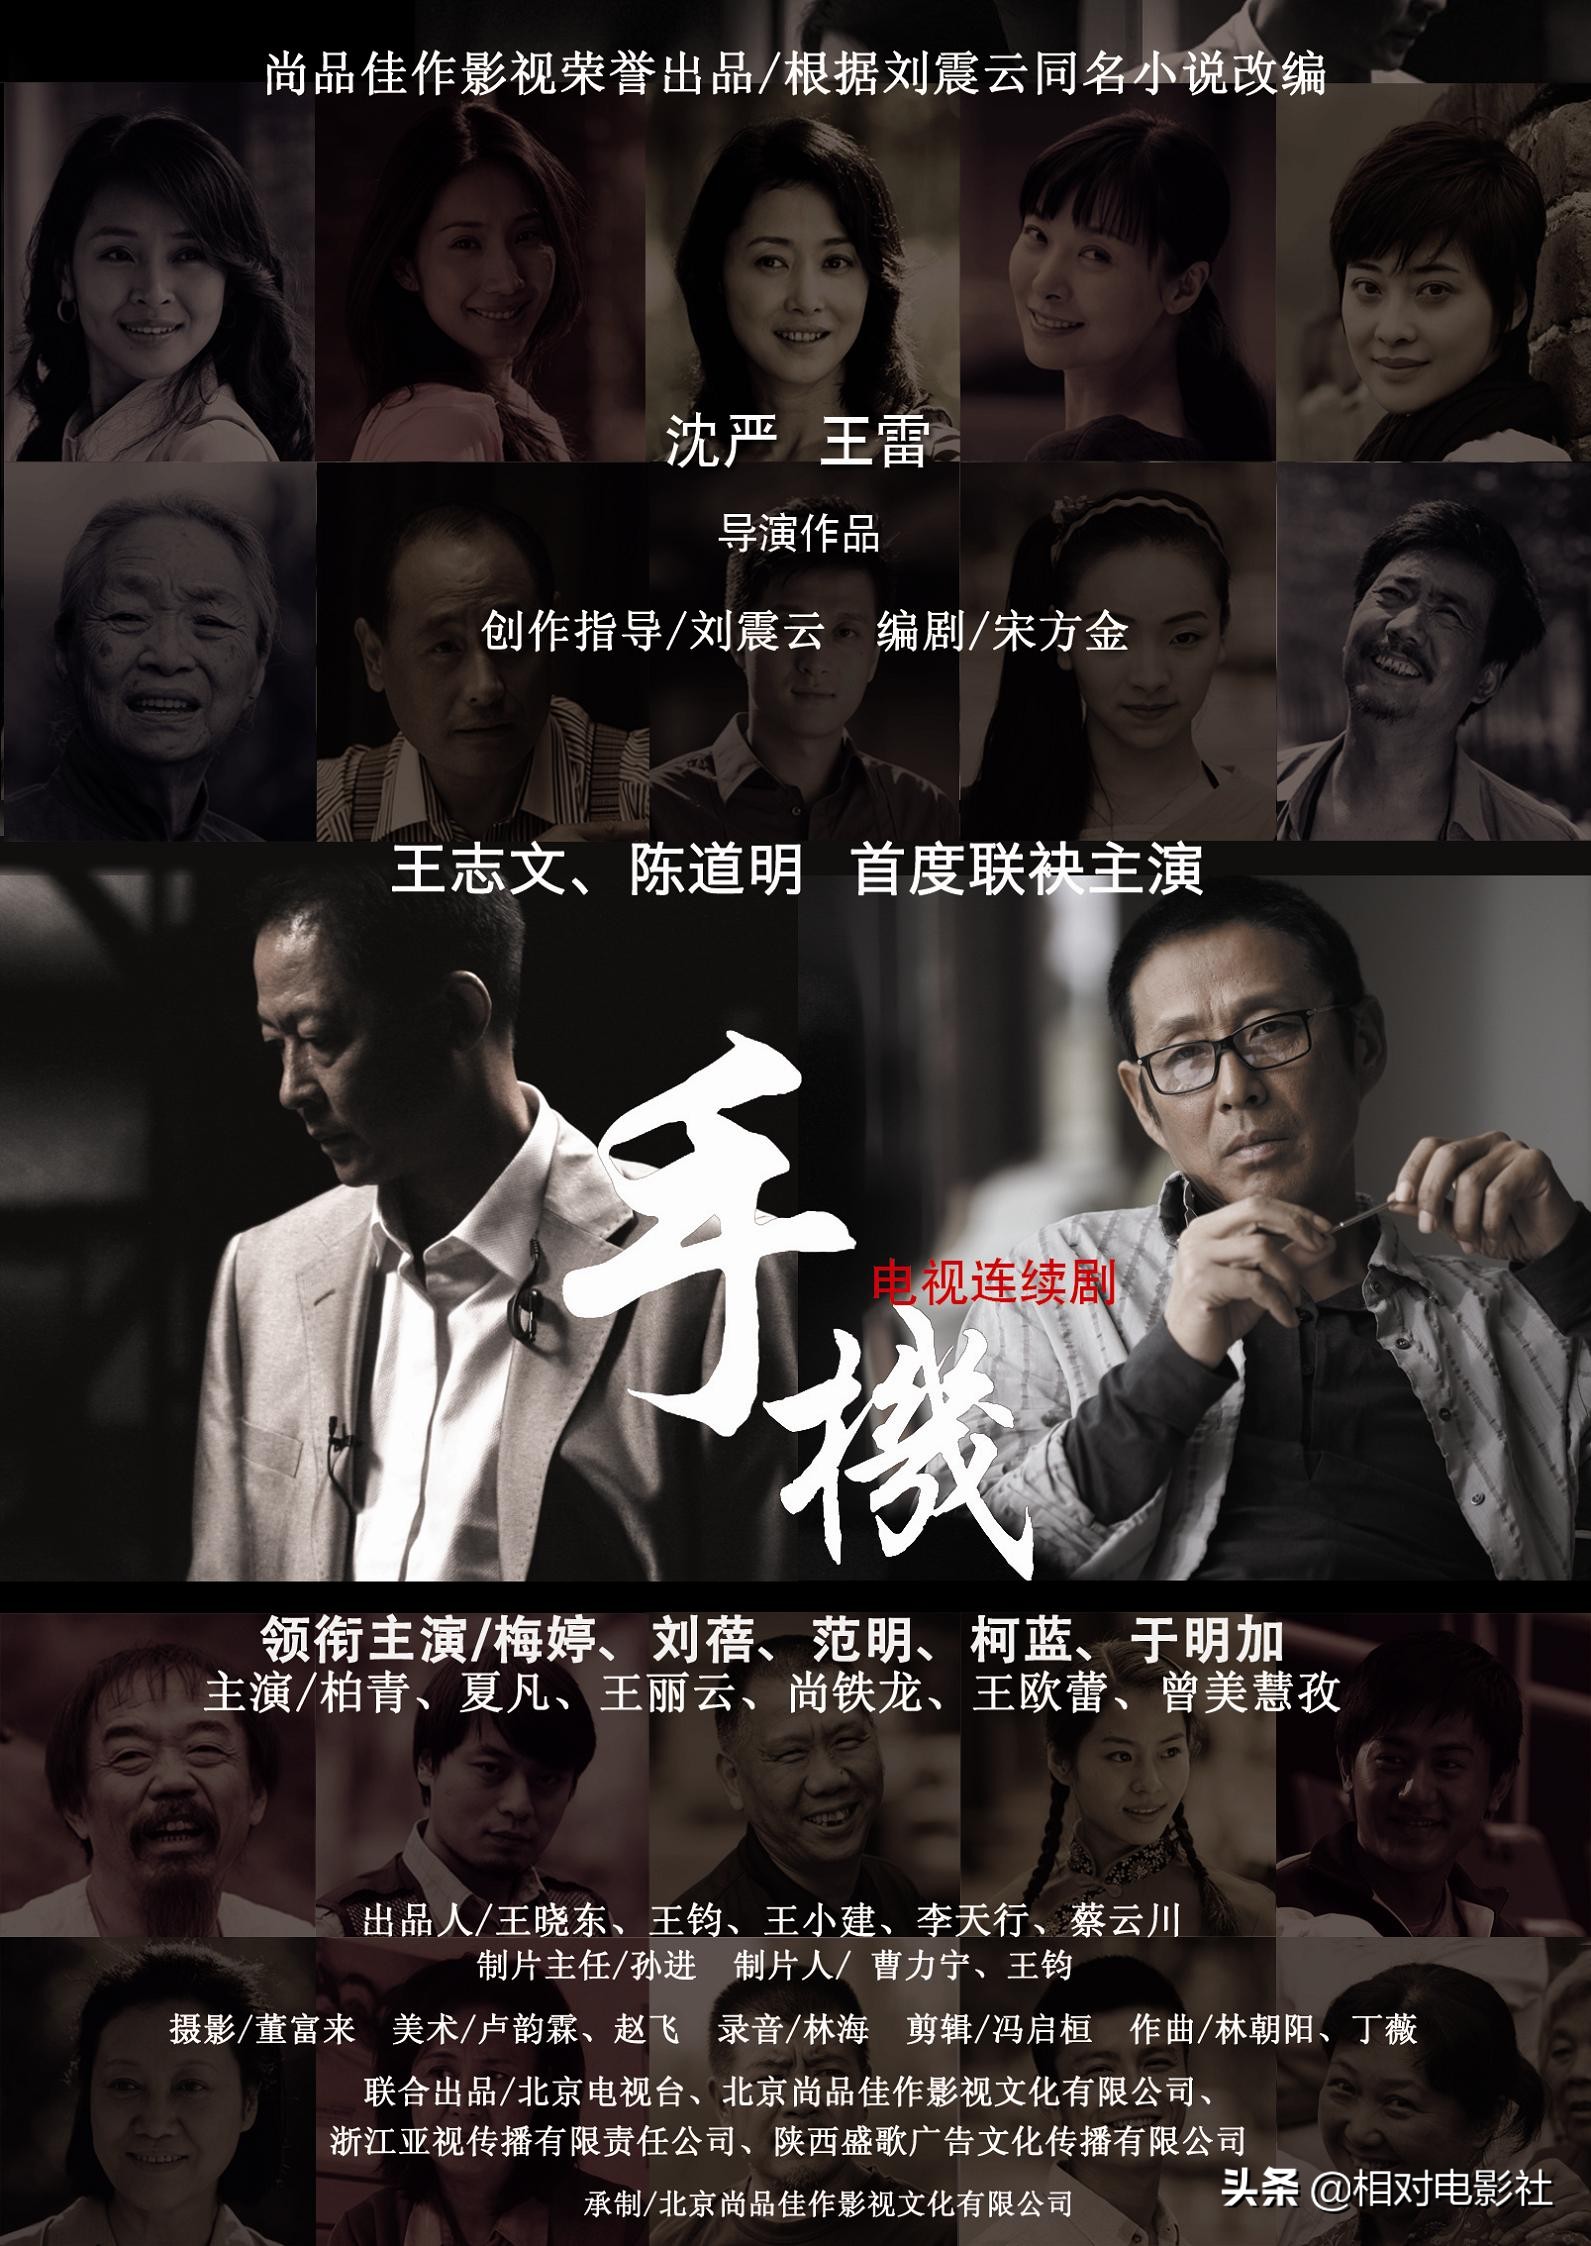 王志文评分最高的6部剧集：《叛逆者》排第5，第一豆瓣高达9.3分